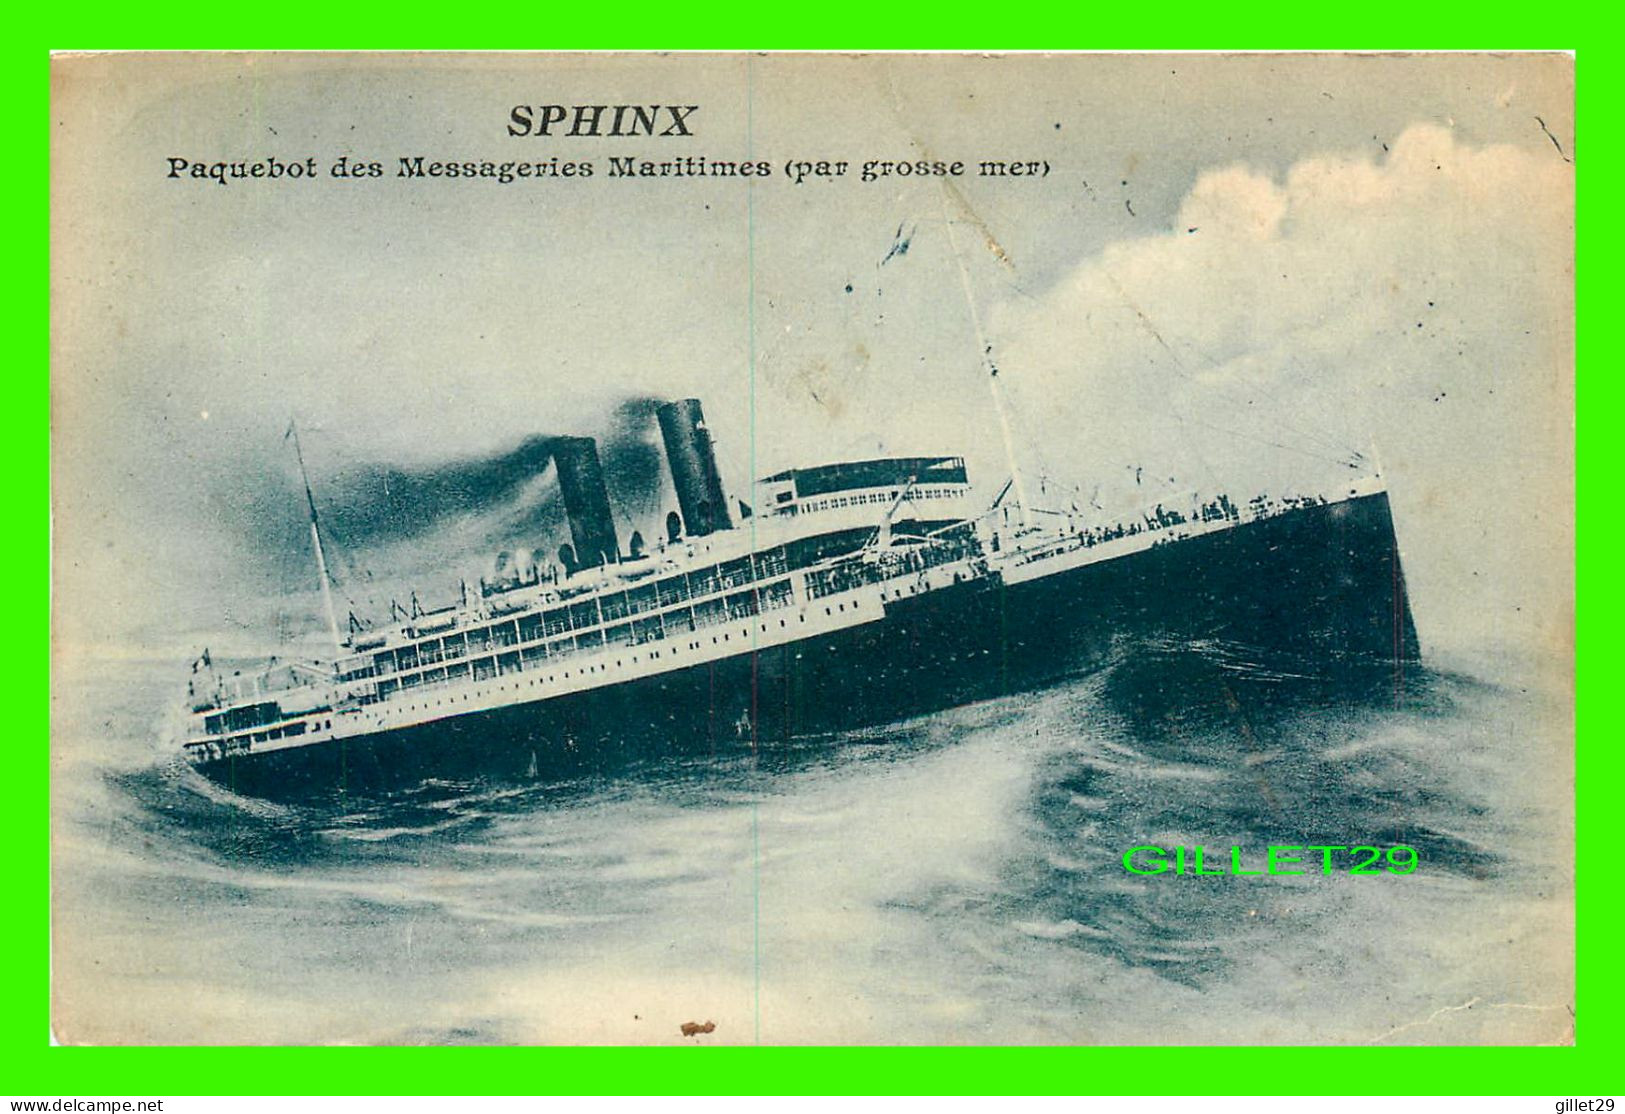 SHIP, BATEAU - " SPHINX " PAQUEBOT DES MESSAGERIES MARITIMES PAR GROSSE MER - BOURELLY, PHOTO-ÉDITEUR - - Piroscafi